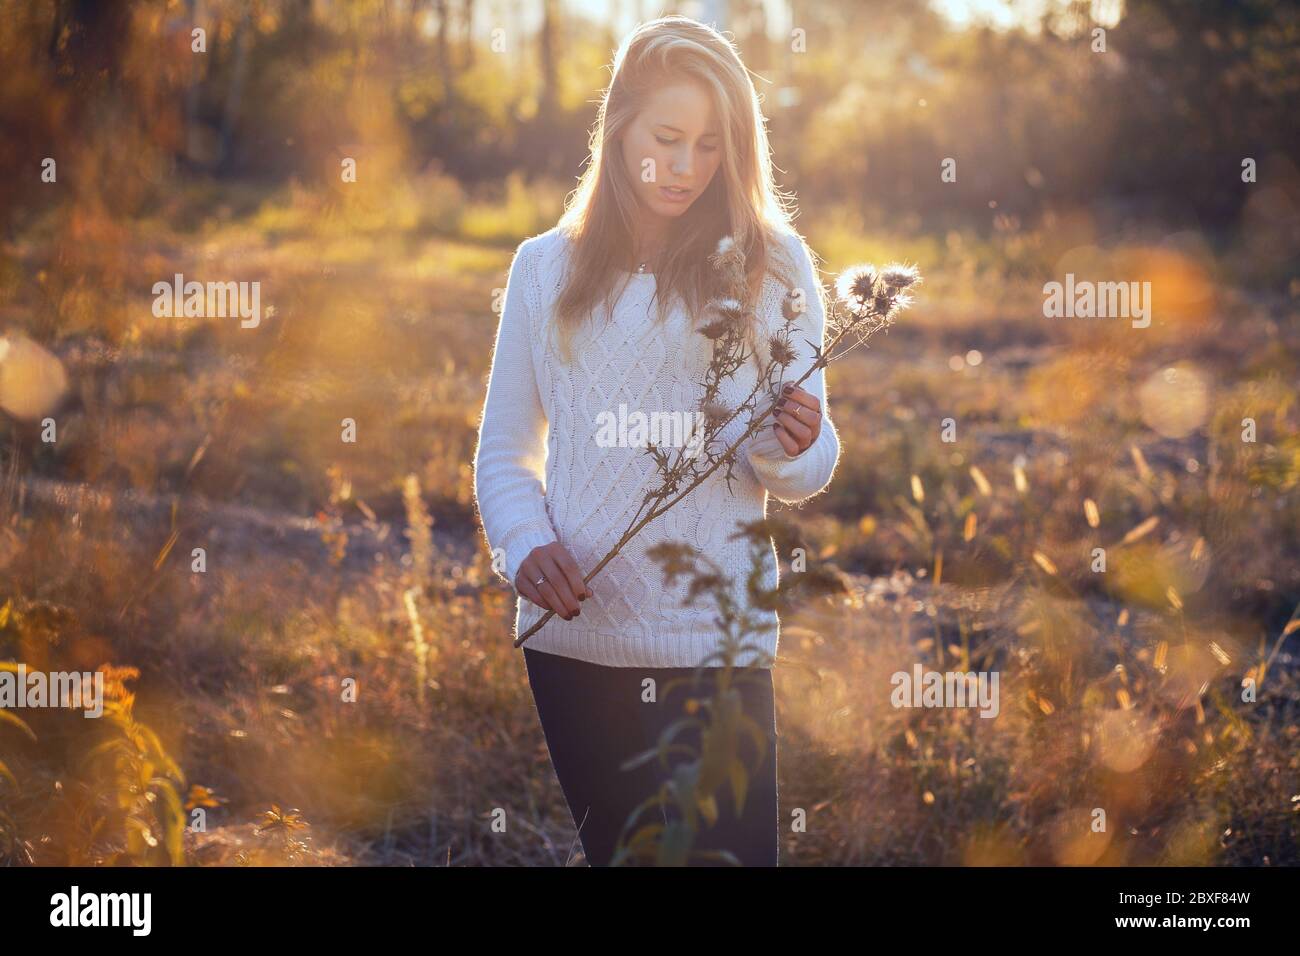 Attraktive junge Frau posiert in einem Feld mit trockenen Blumen. Sonnenhintergrundbeleuchtung im Porträt Stockfoto